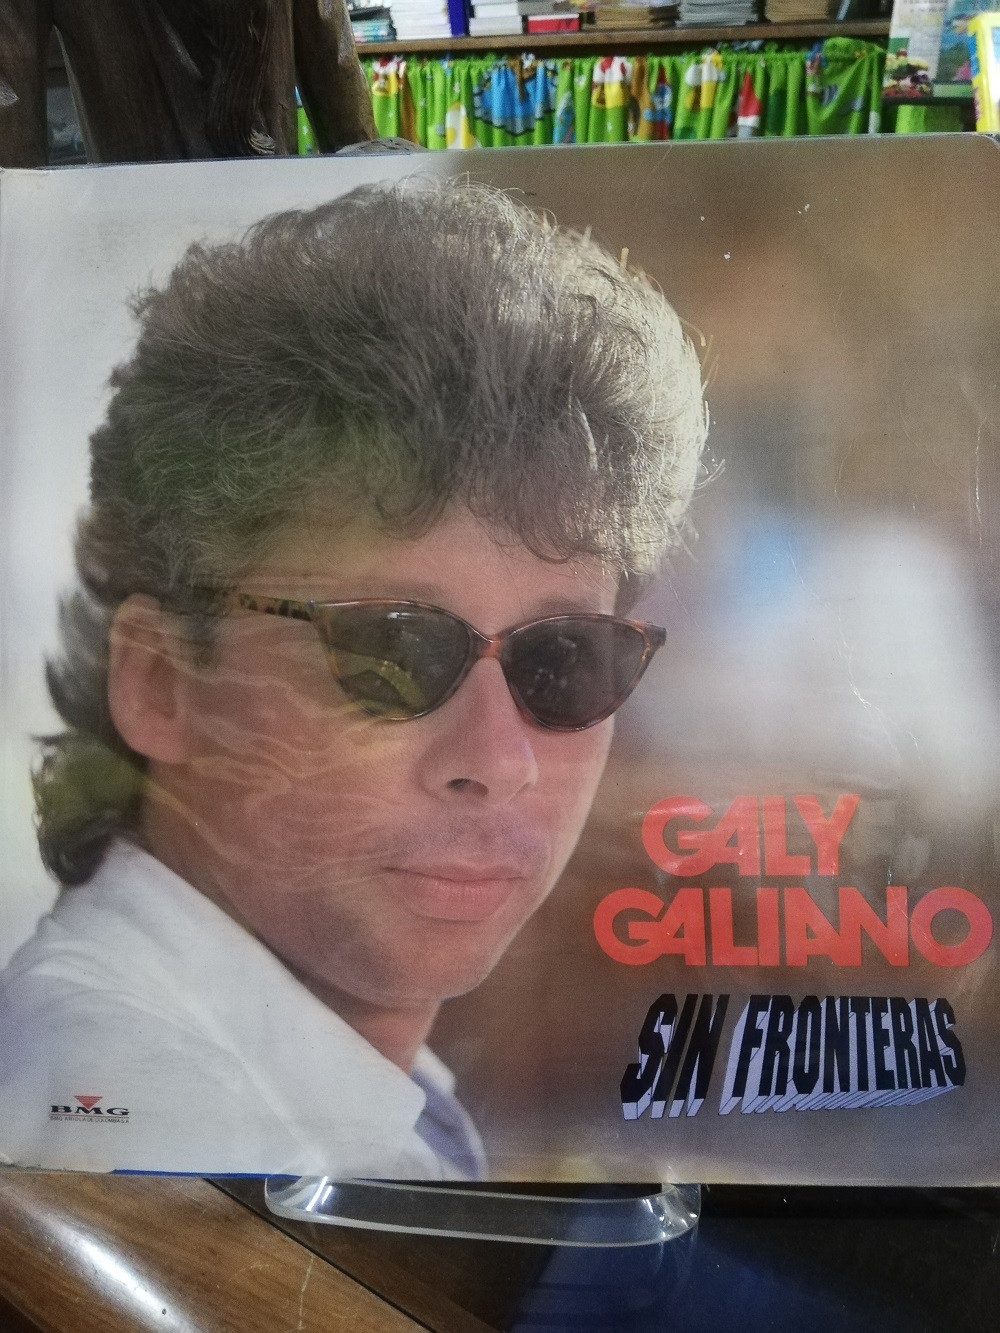 Imagen LP GALY GALIANO - SIN FRONTERAS